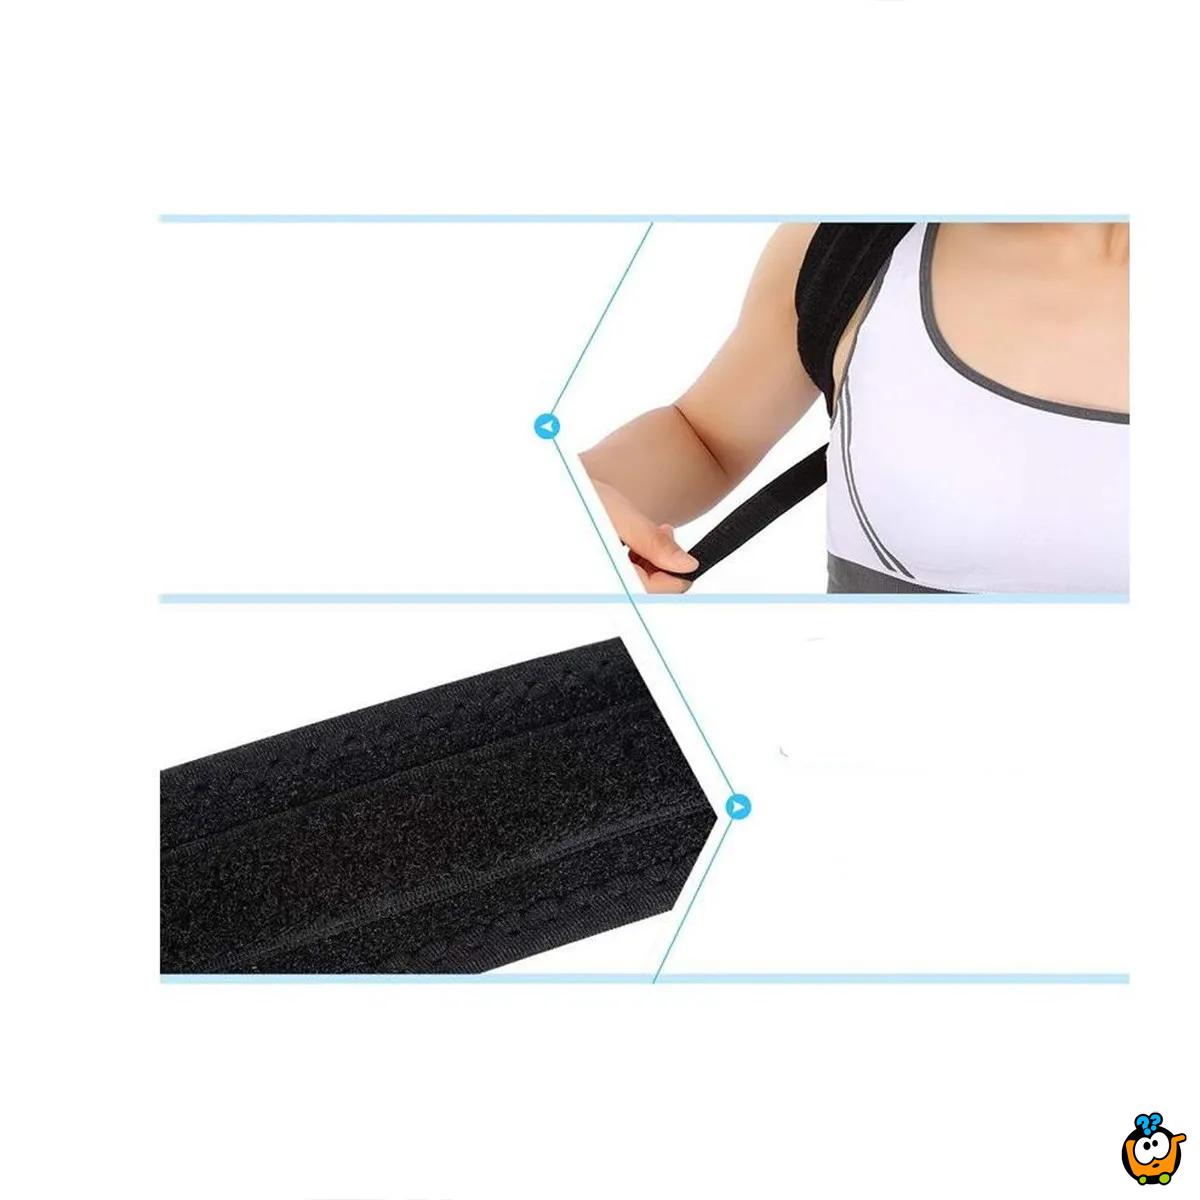 Corrector Belt - pojas za korekciju držanja leđa i ramena